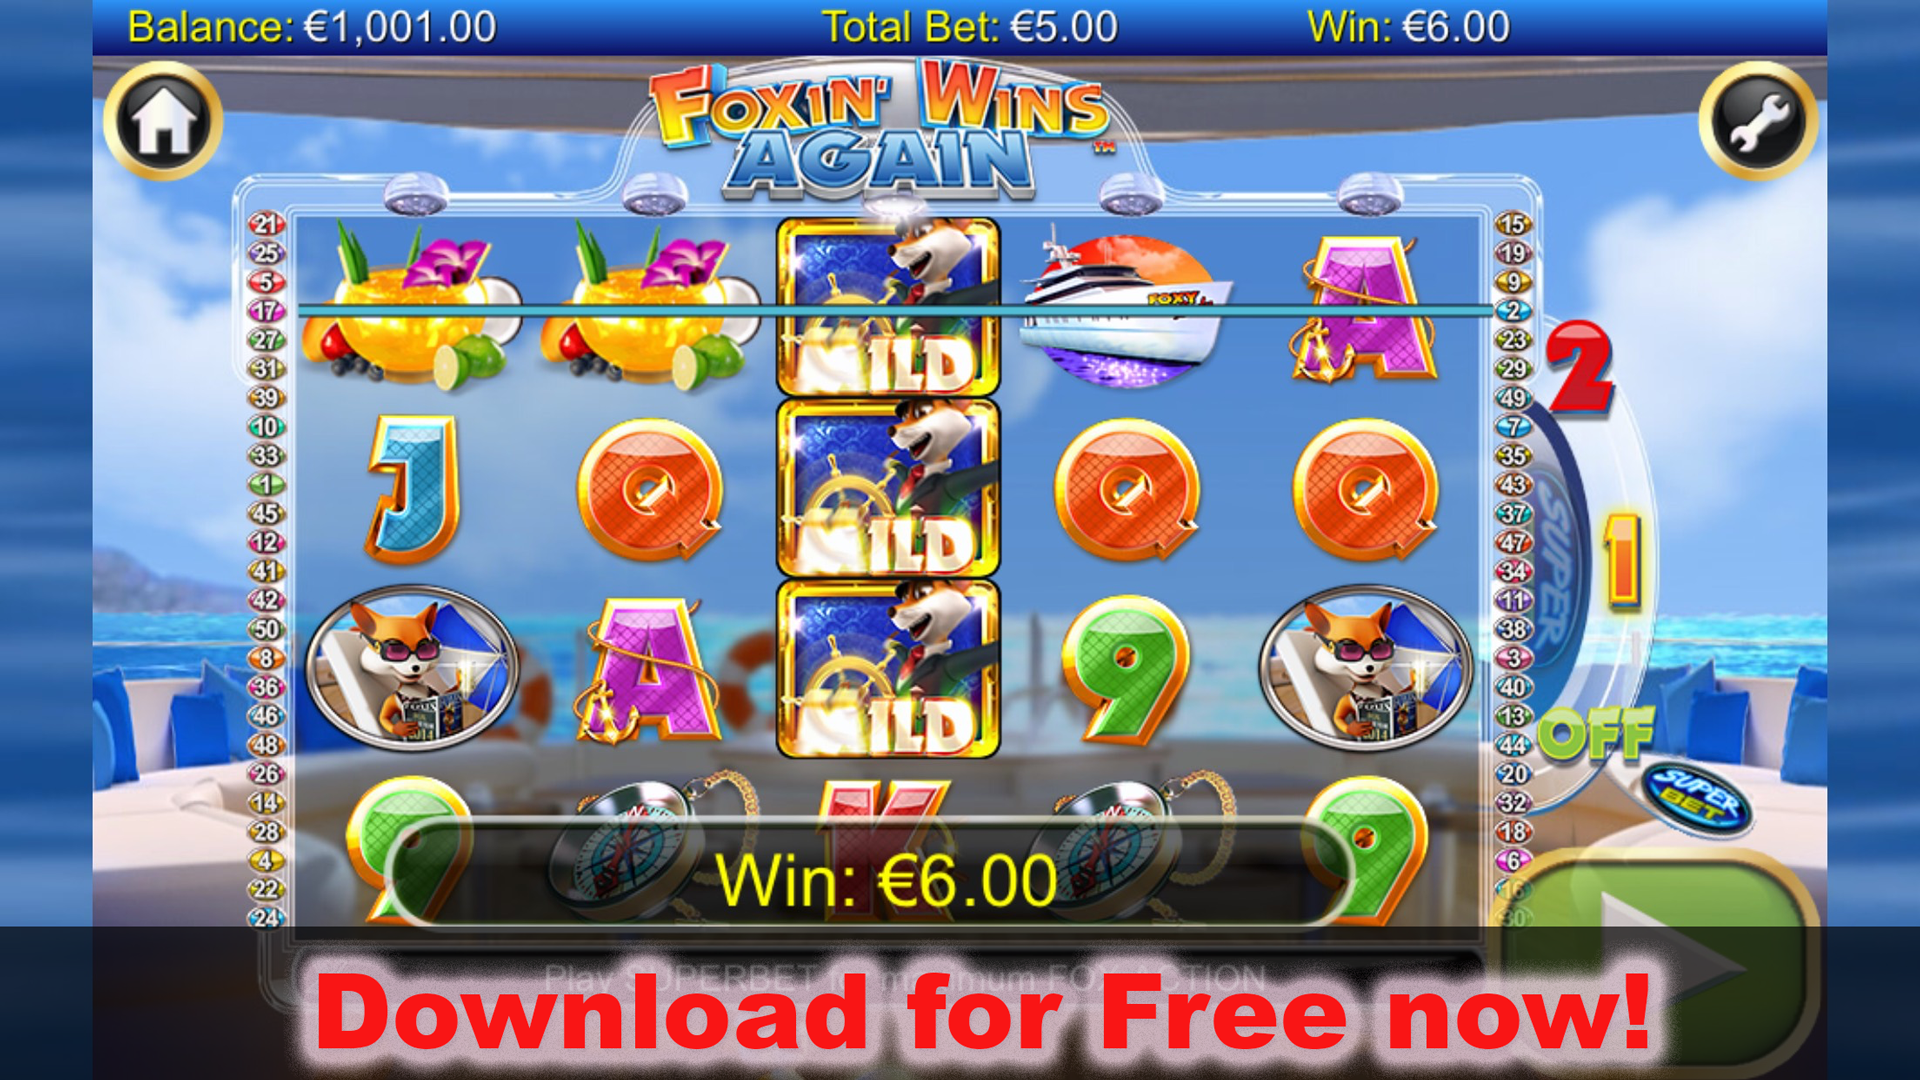 Móvil de Winner casino casinos virtuales - 88462